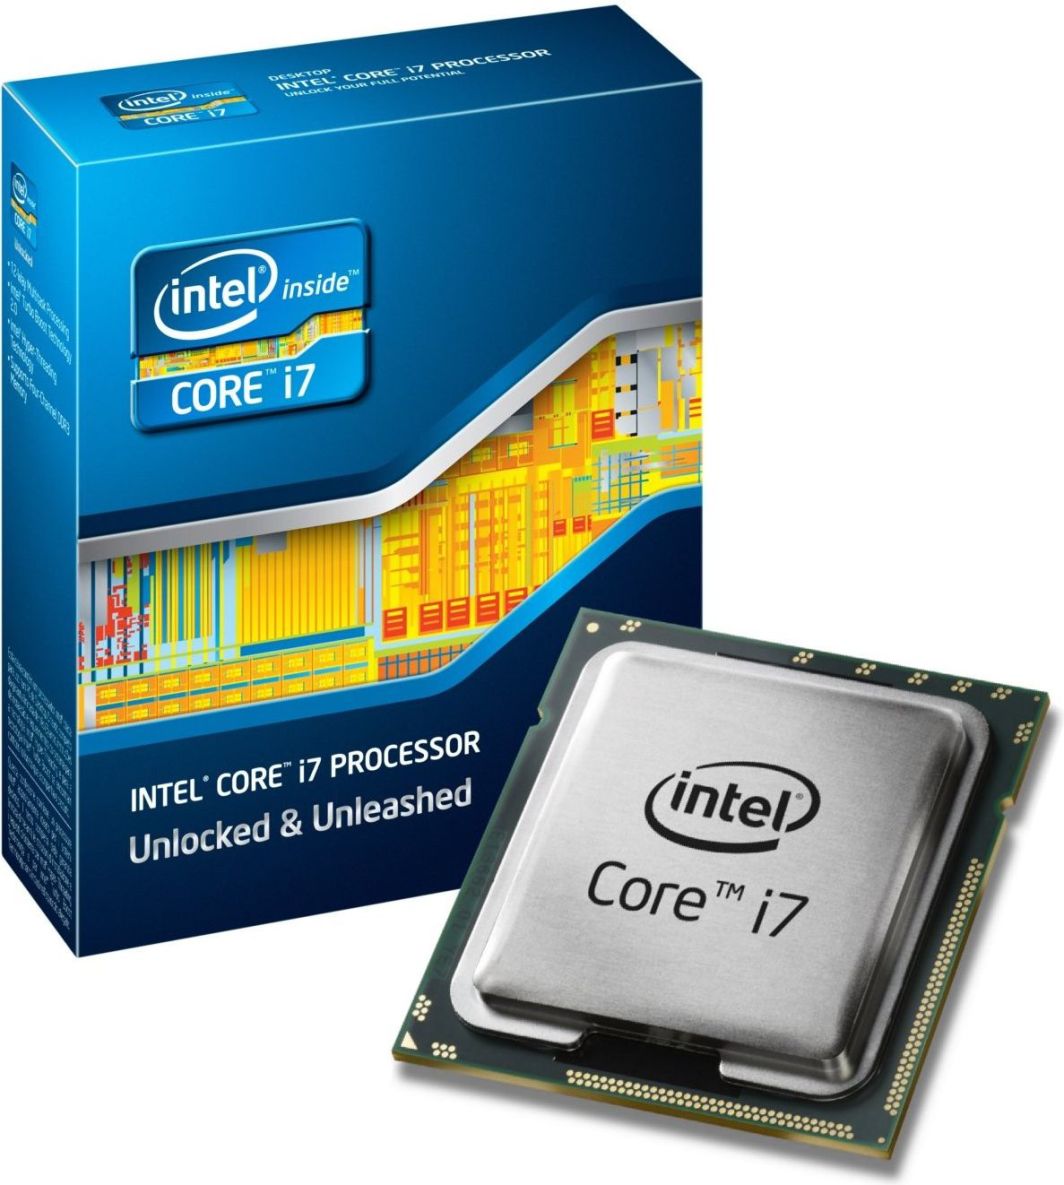 Какой интел коре лучше. Процессор Intel® Core™ i7. Процессор Интел Core i7. Процессор для ноутбука Intel Core i7. Процессор Интел коре ай 7.